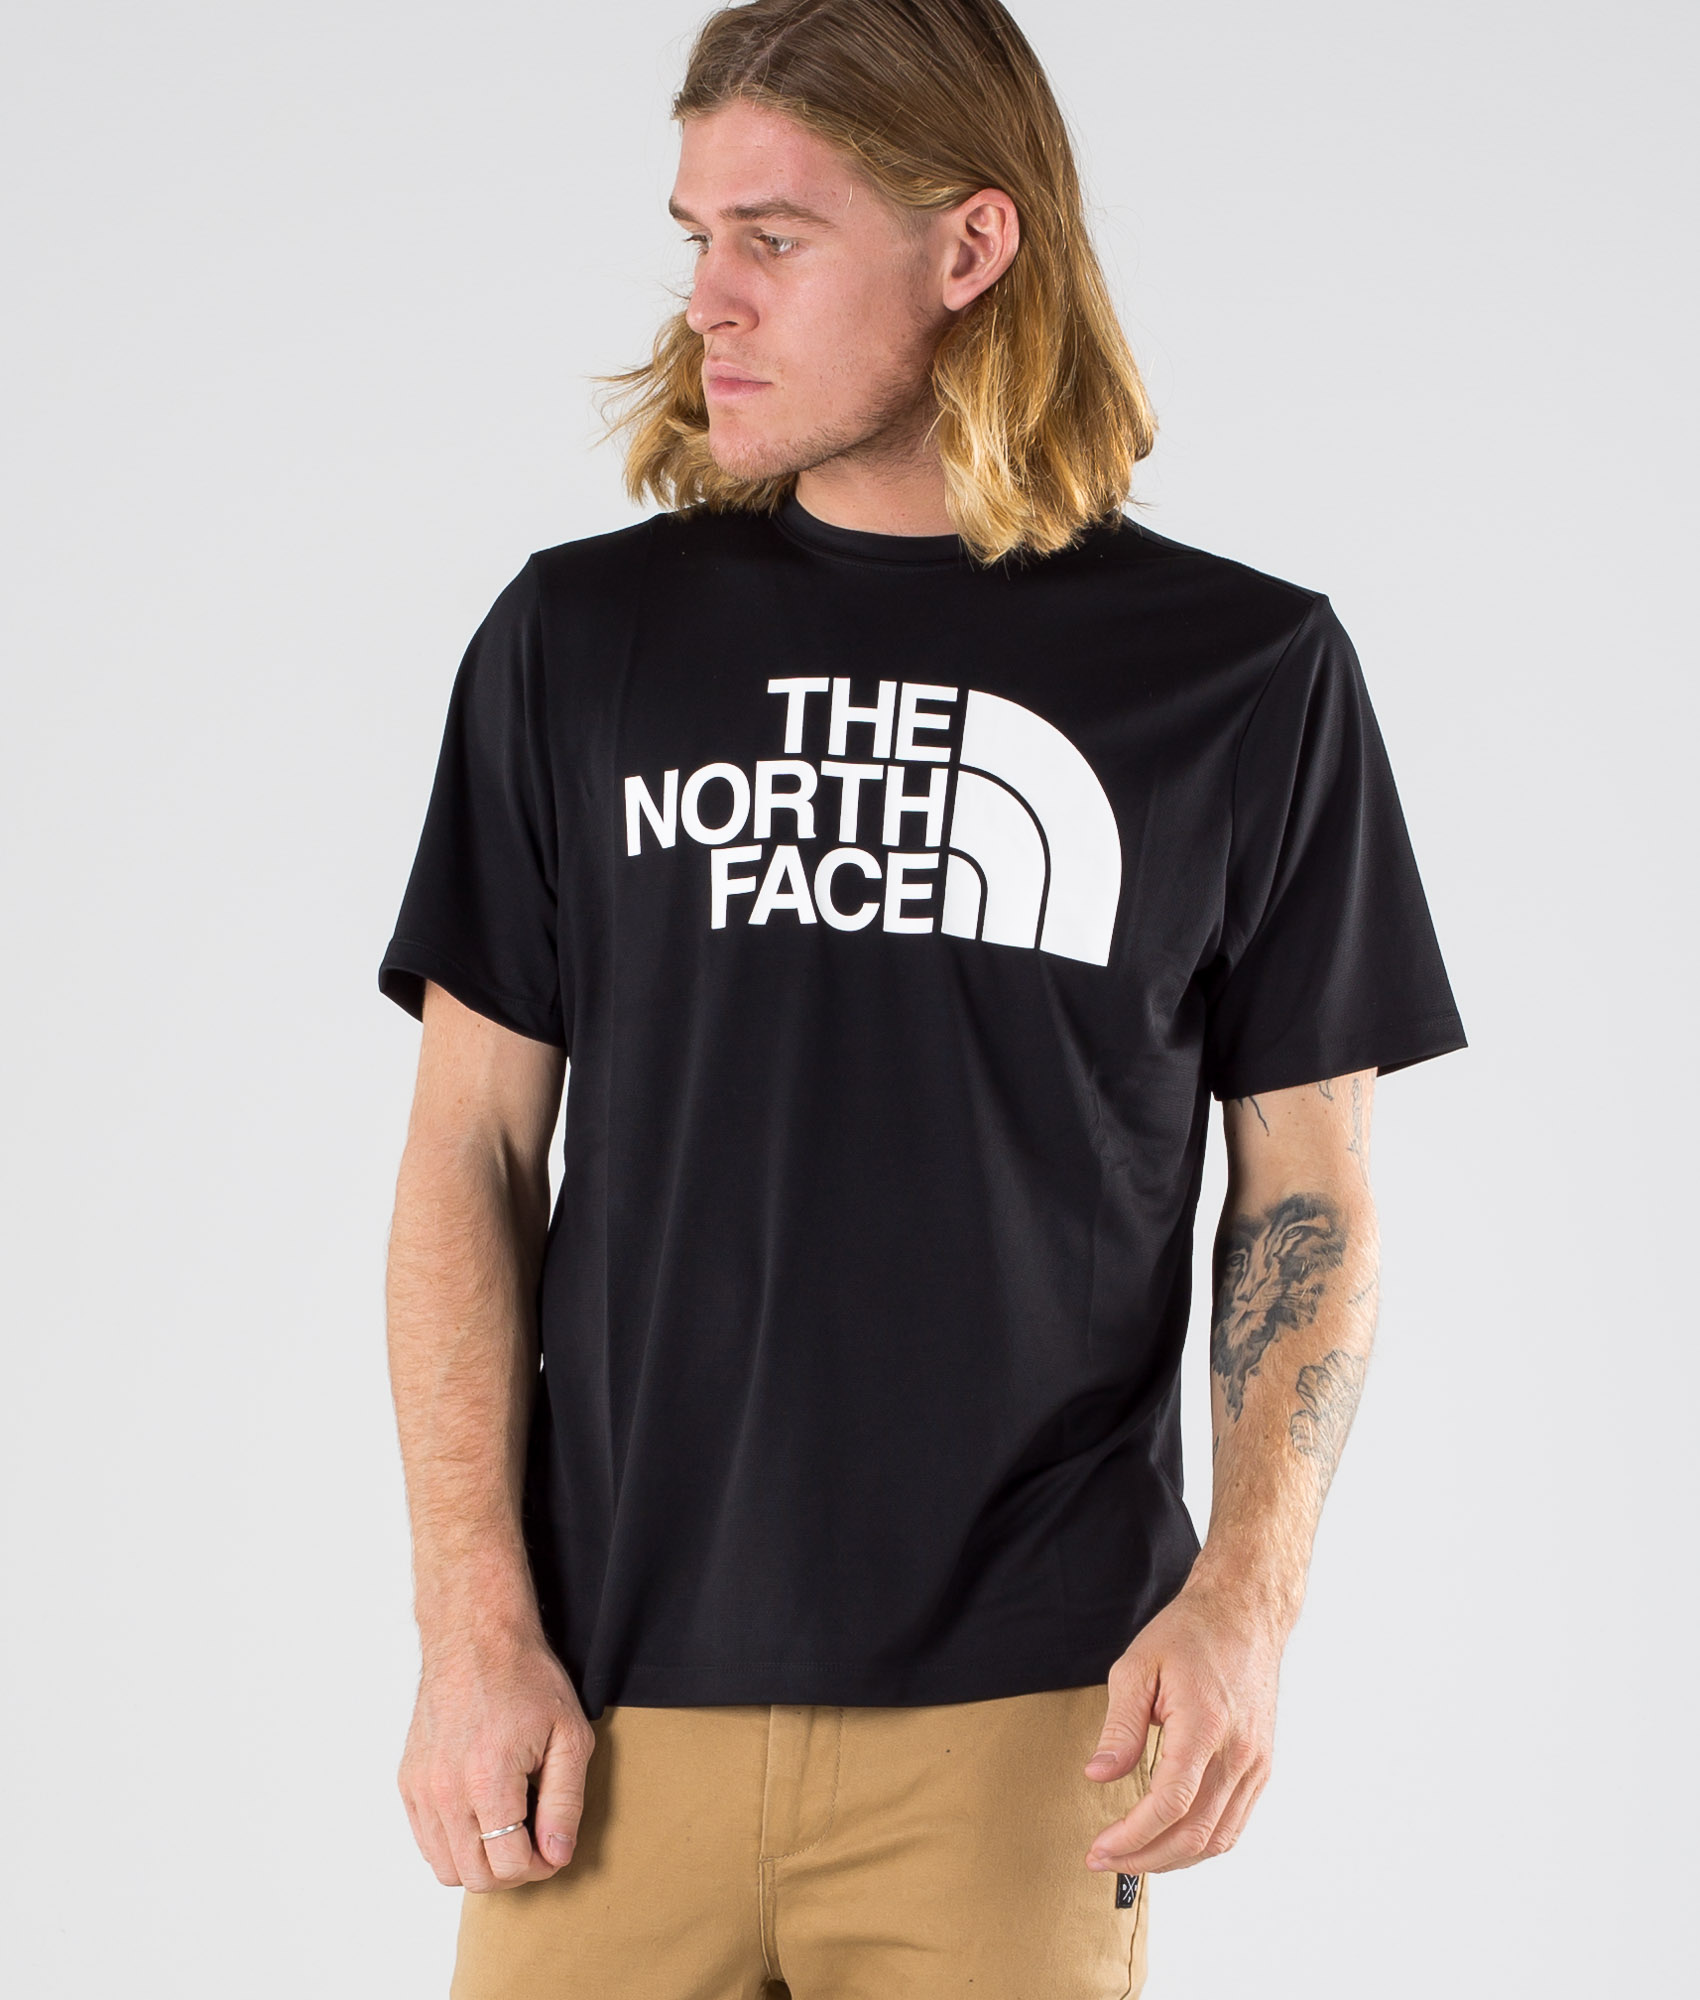 north face tee shirts